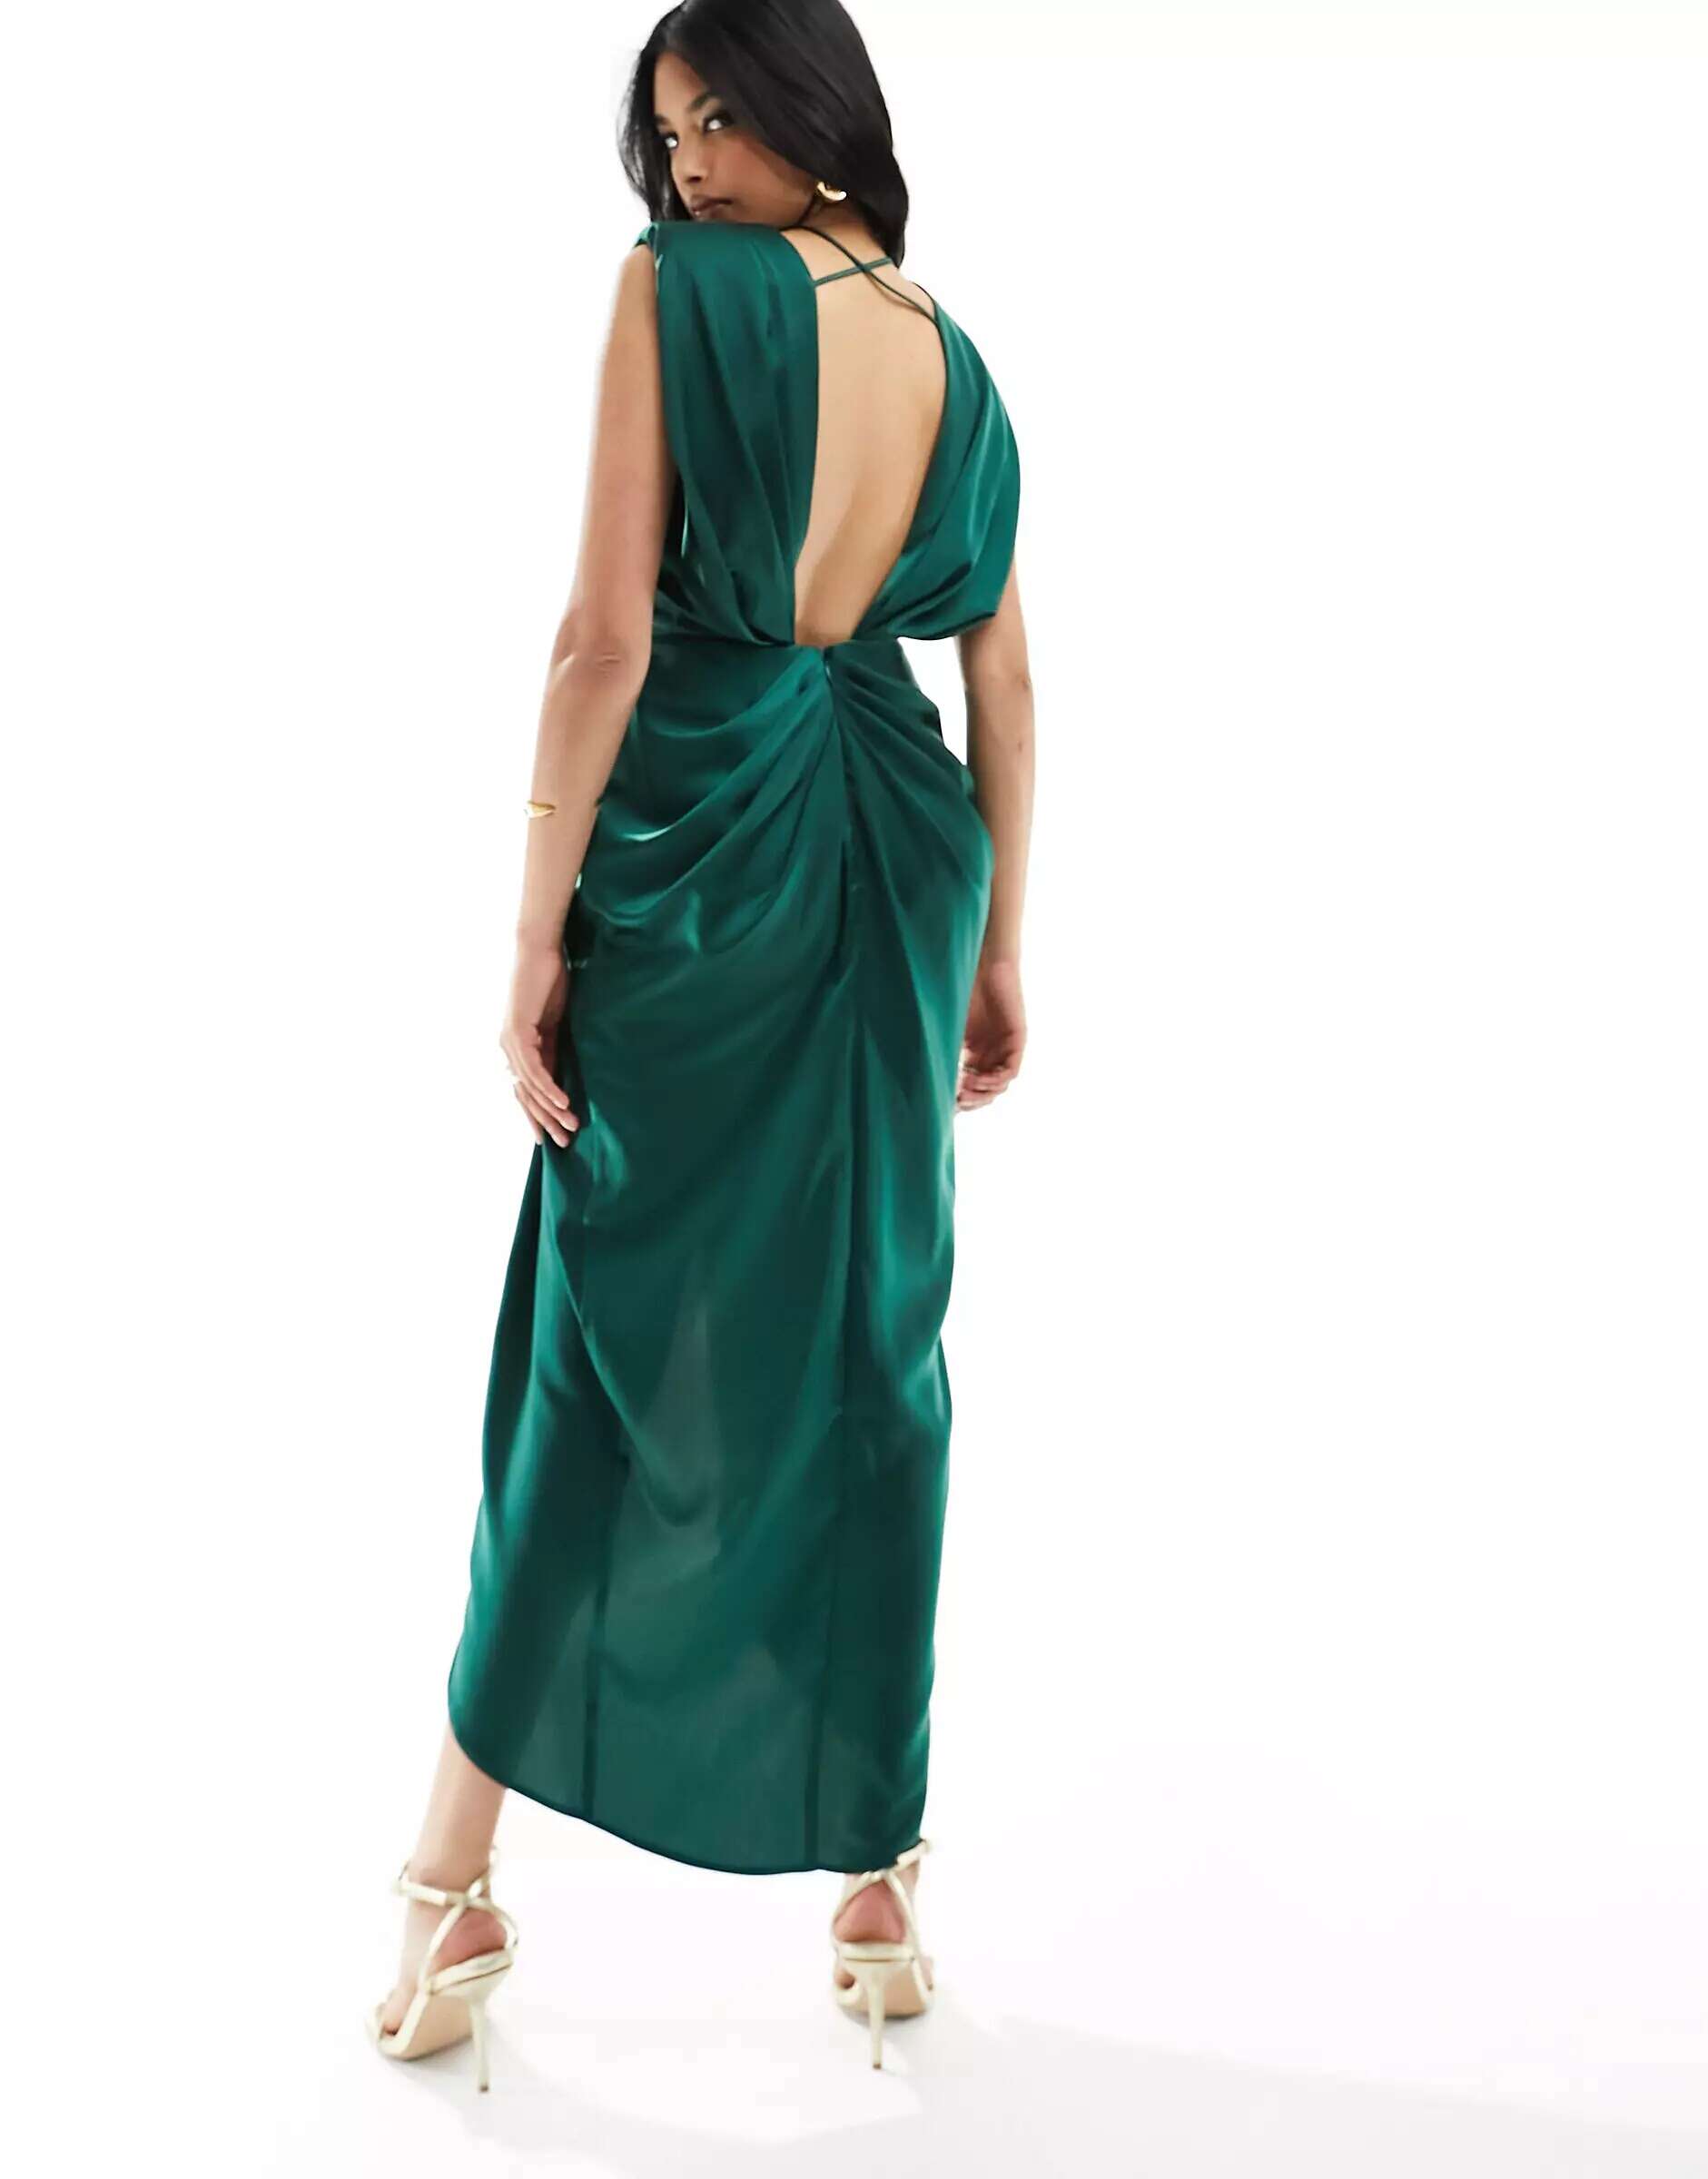 Зеленое атласное платье миди с глубоким вырезом и закрученной деталью спереди ASOS атласное платье миди премиум класса с вырезом халтер и закрученной деталью misspap зеленый